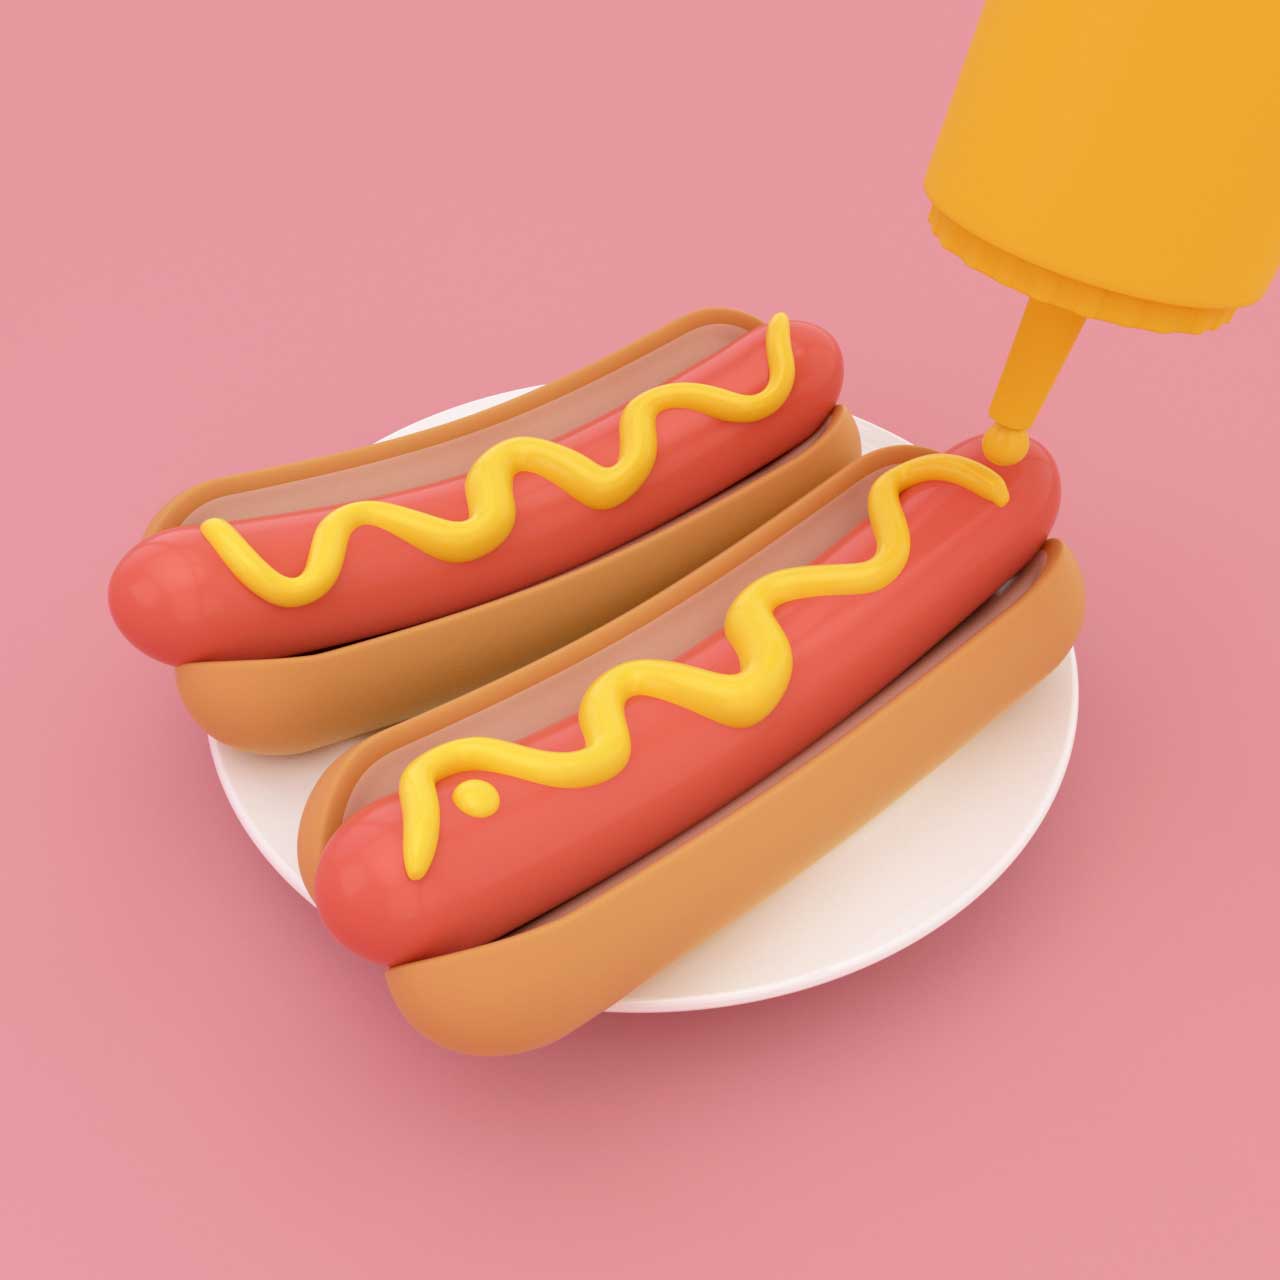 3d illustratie van een hotdog met mosterd